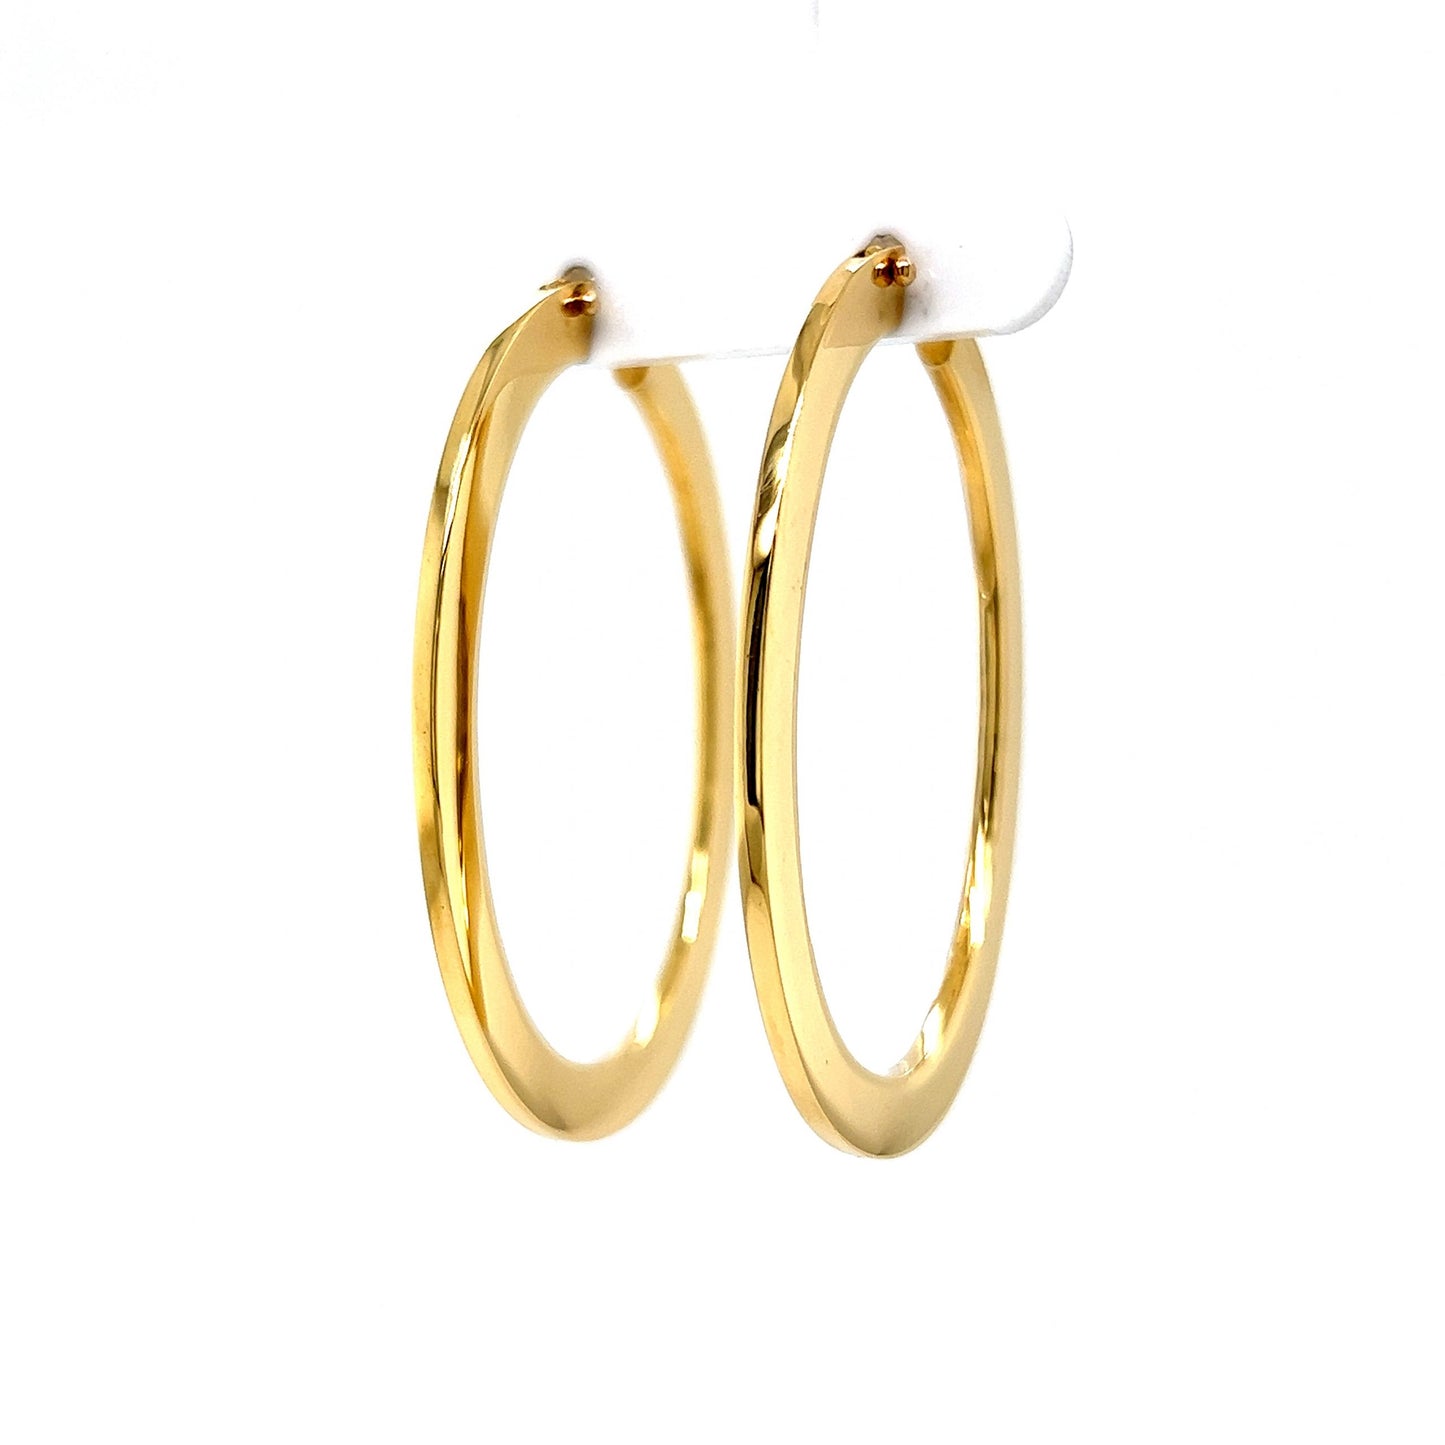 Flat Oval Hoop Earrings in 18k Yellow Gold